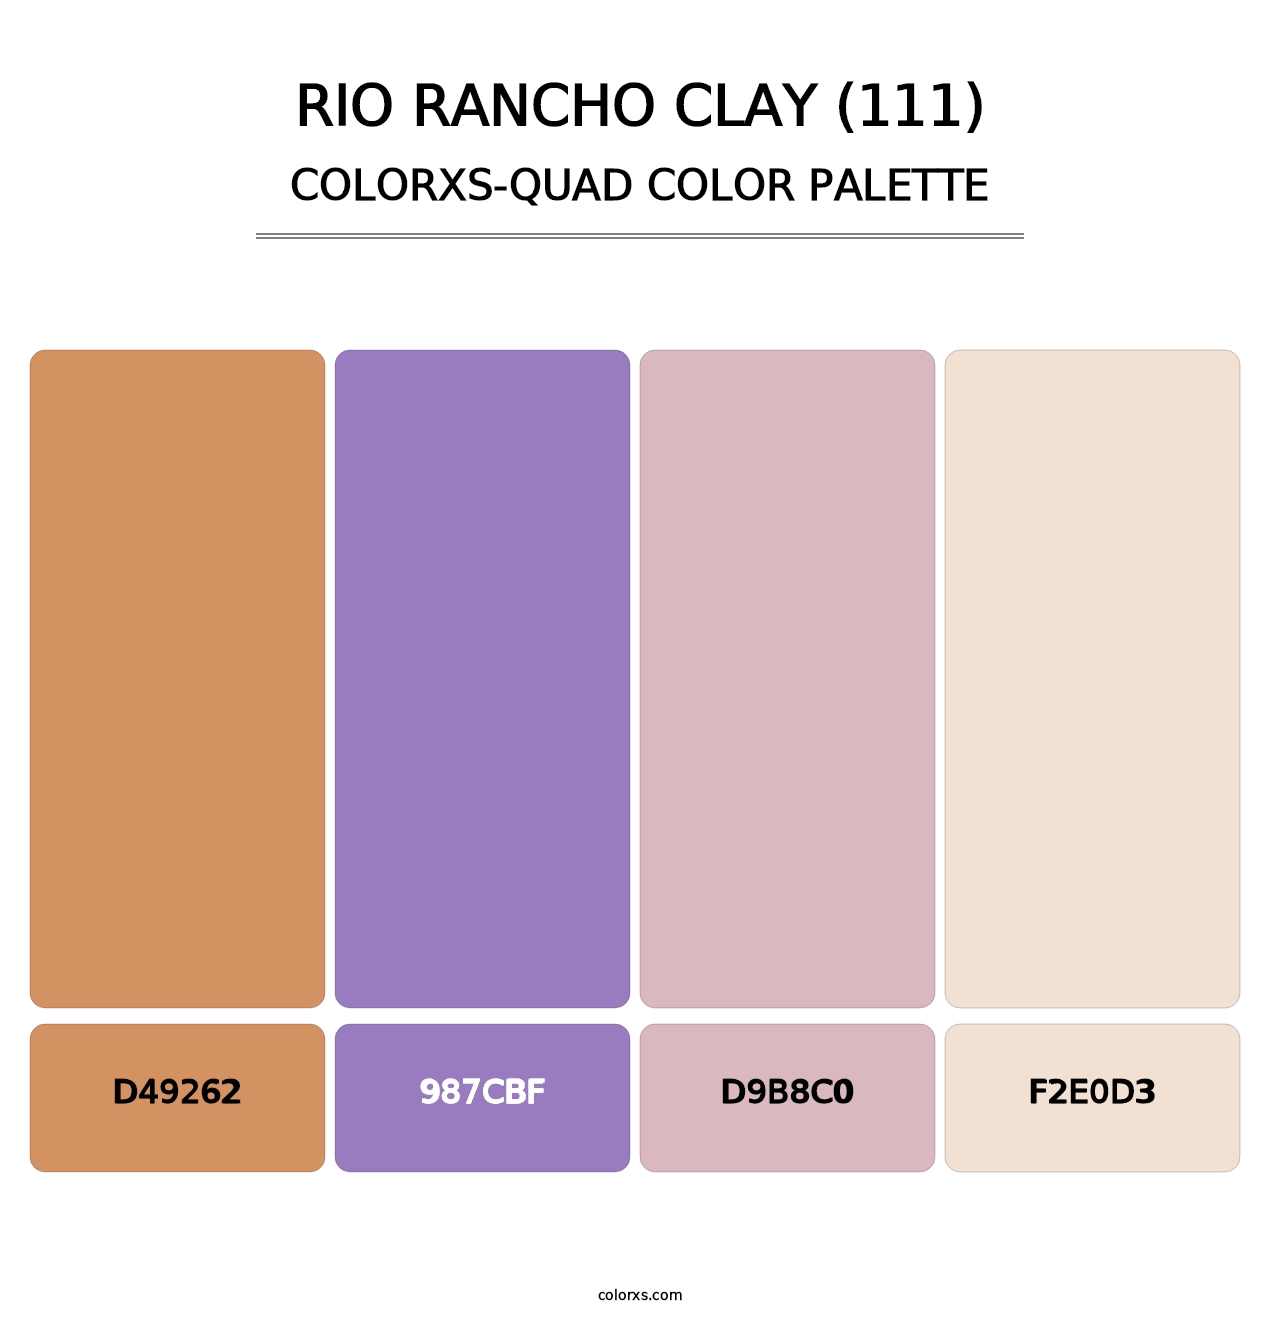 Rio Rancho Clay (111) - Colorxs Quad Palette